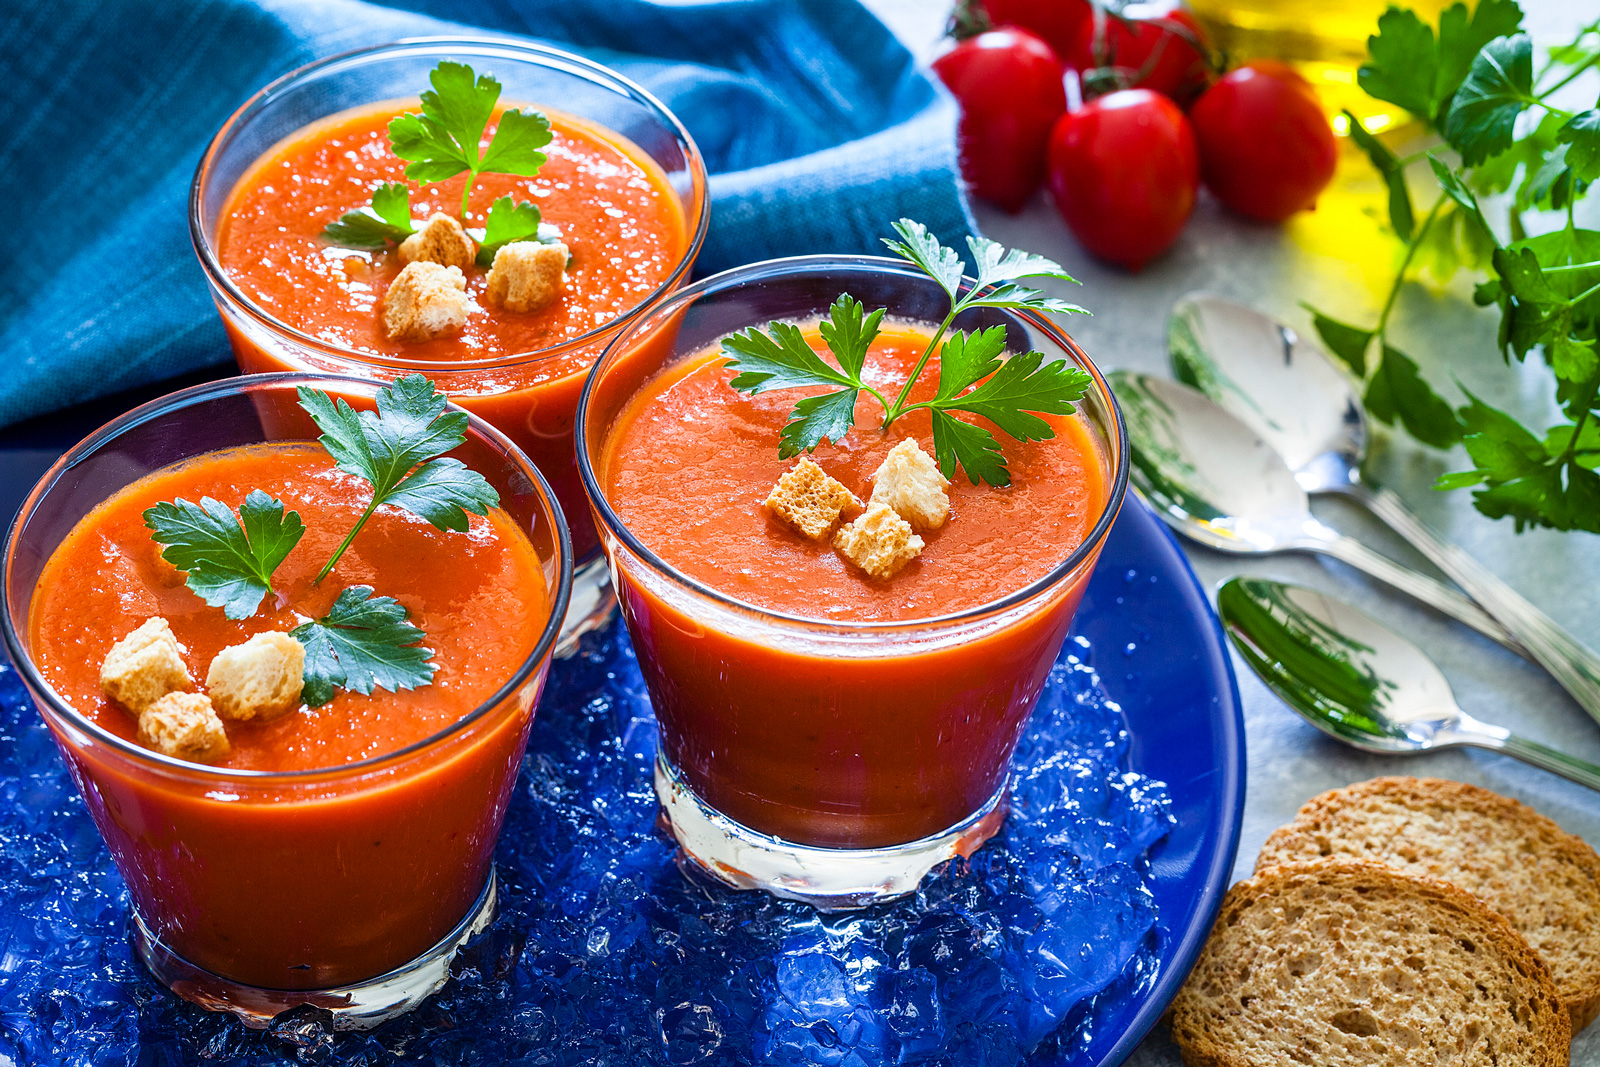 Die Gazpacho schmeckt an heißen Tagen am besten eiskalt serviert.